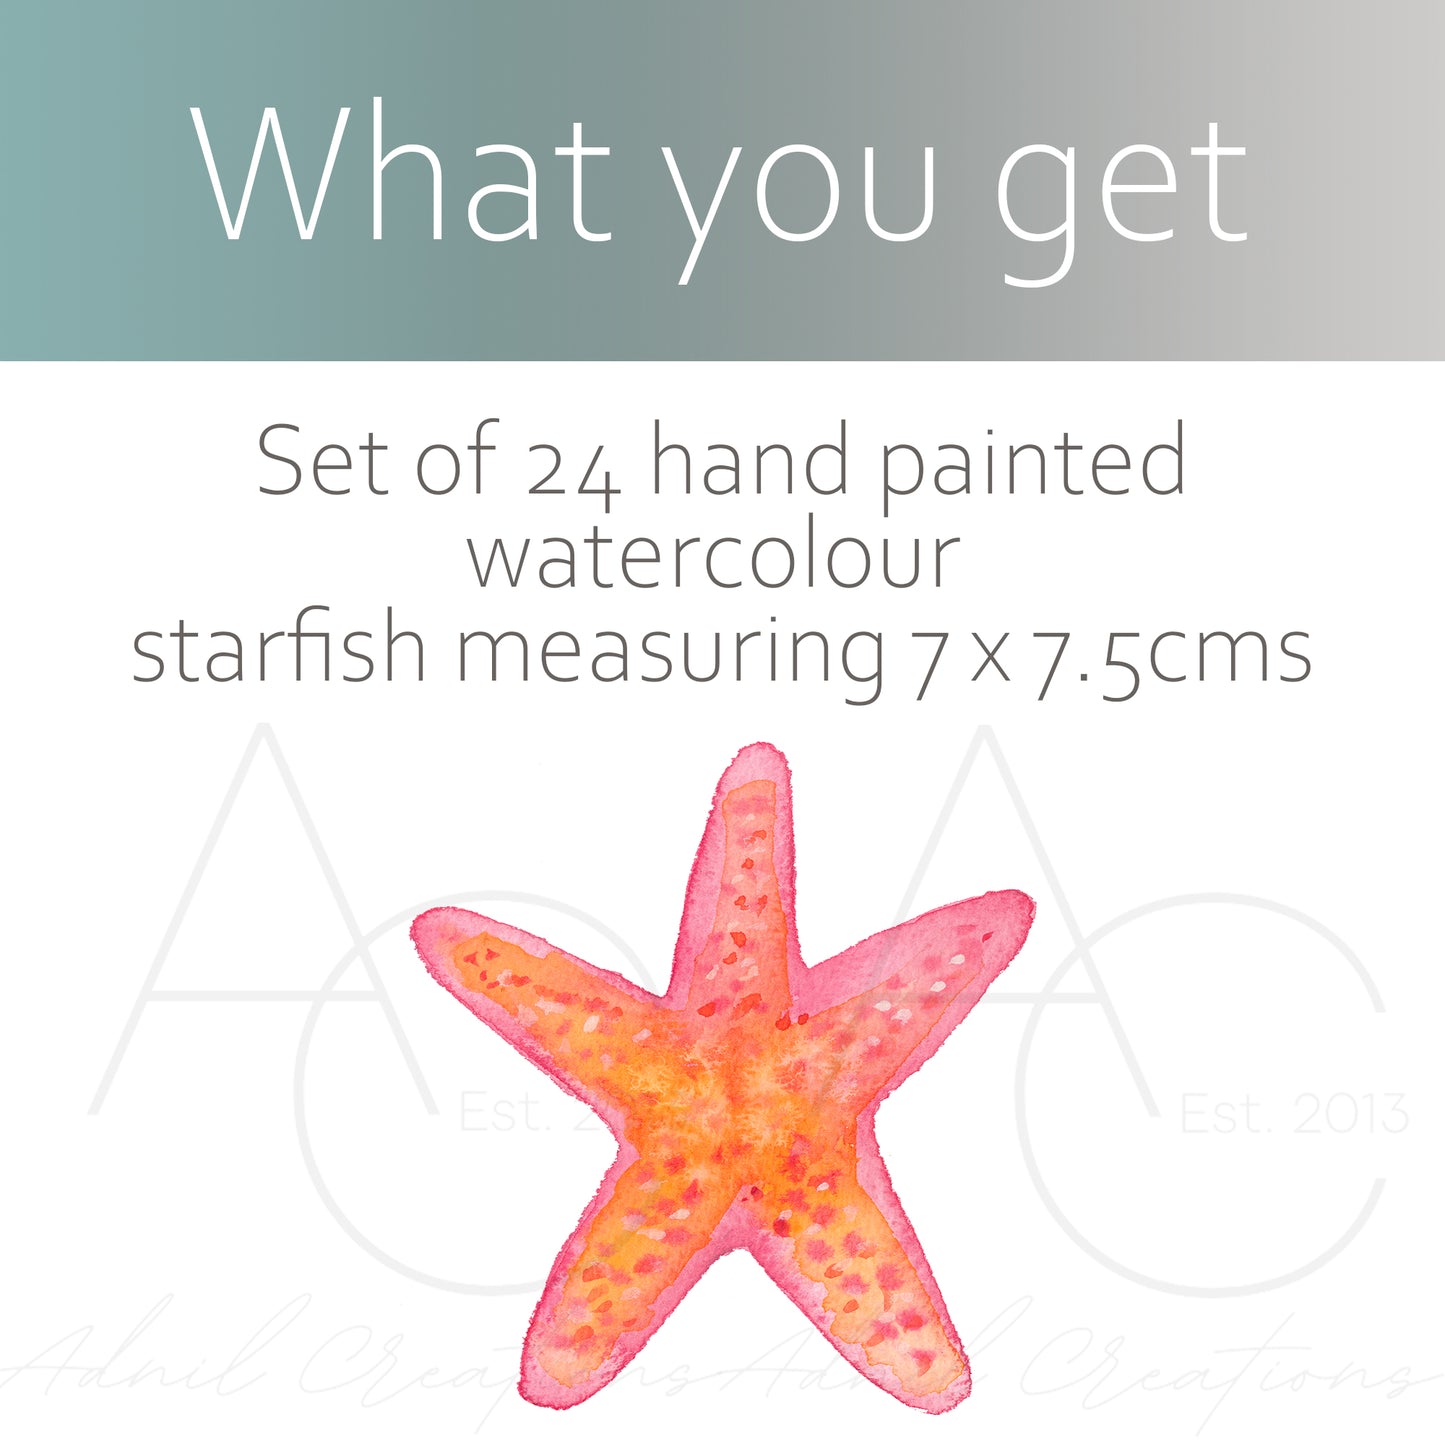 Watercolour starfish pattern | Fabric wall stickers